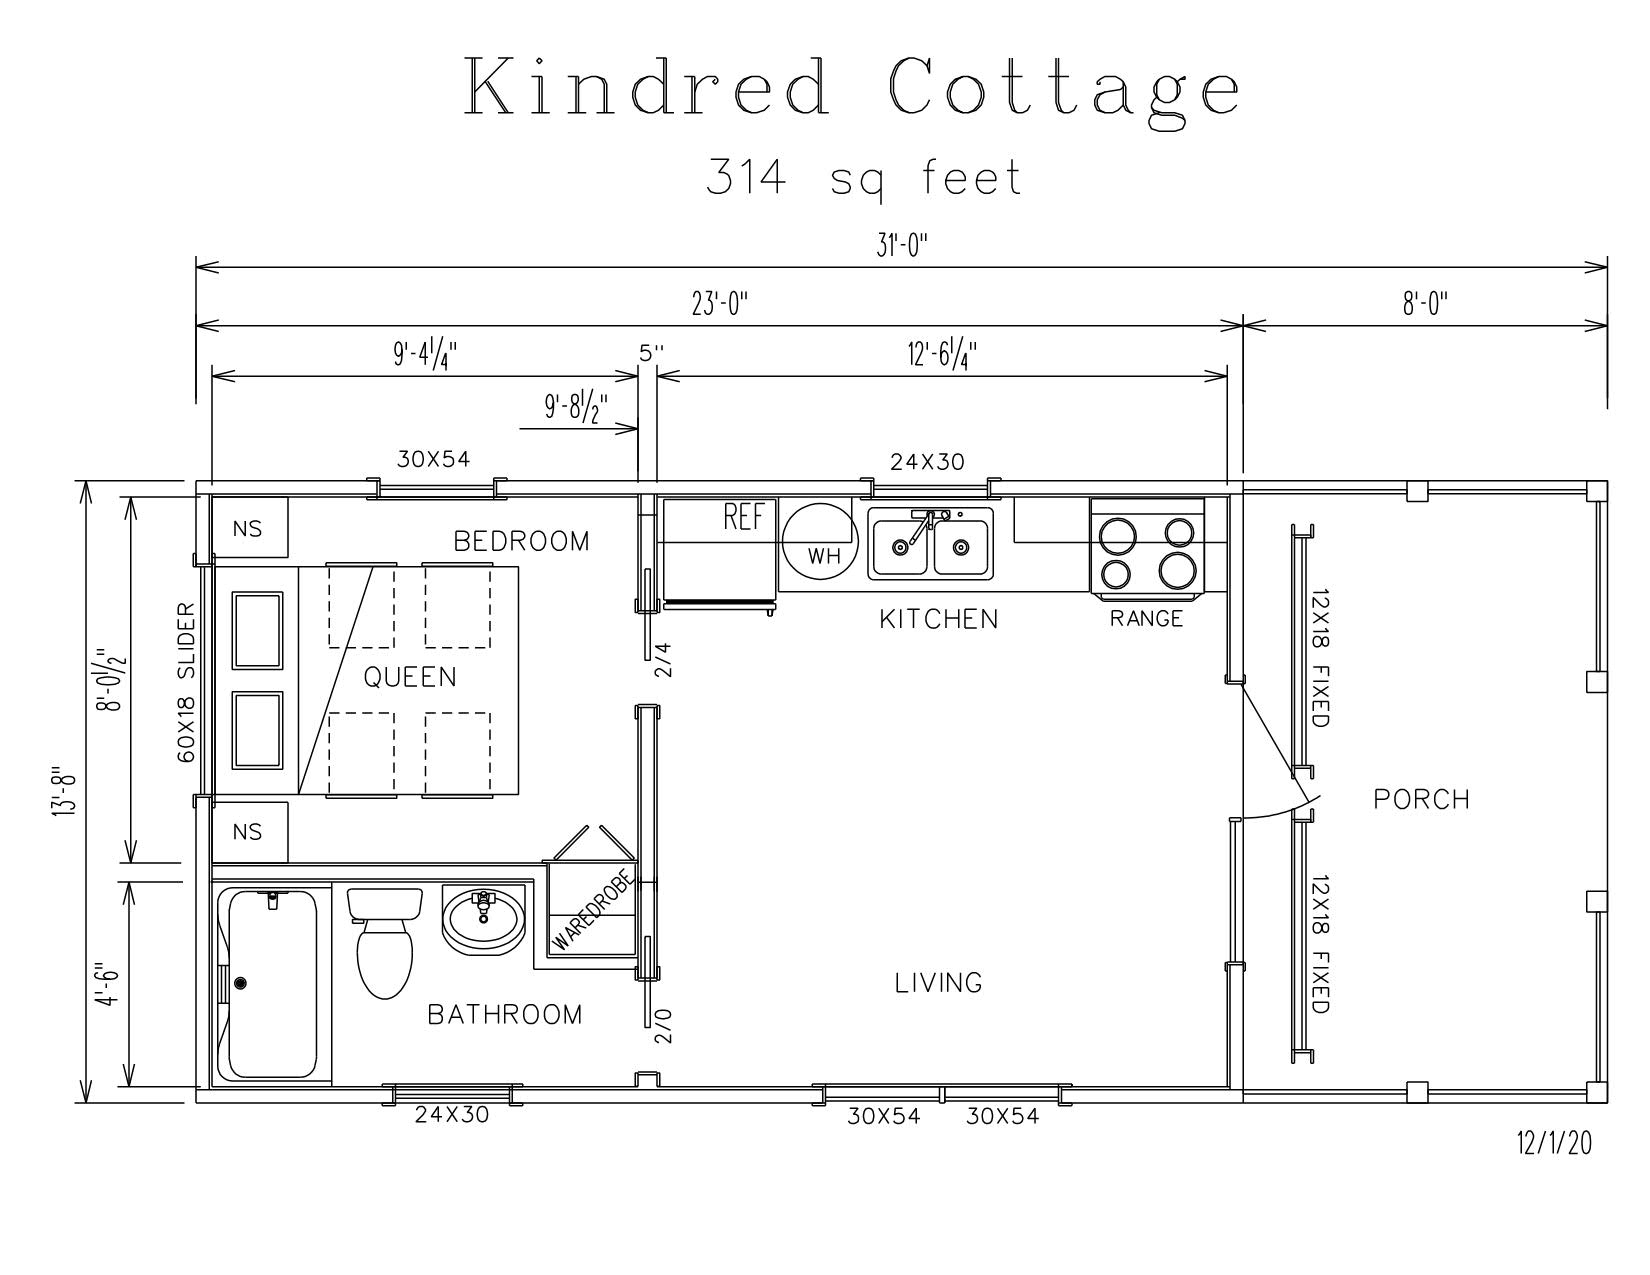 Kindred Cottage Park Model Log Cabin